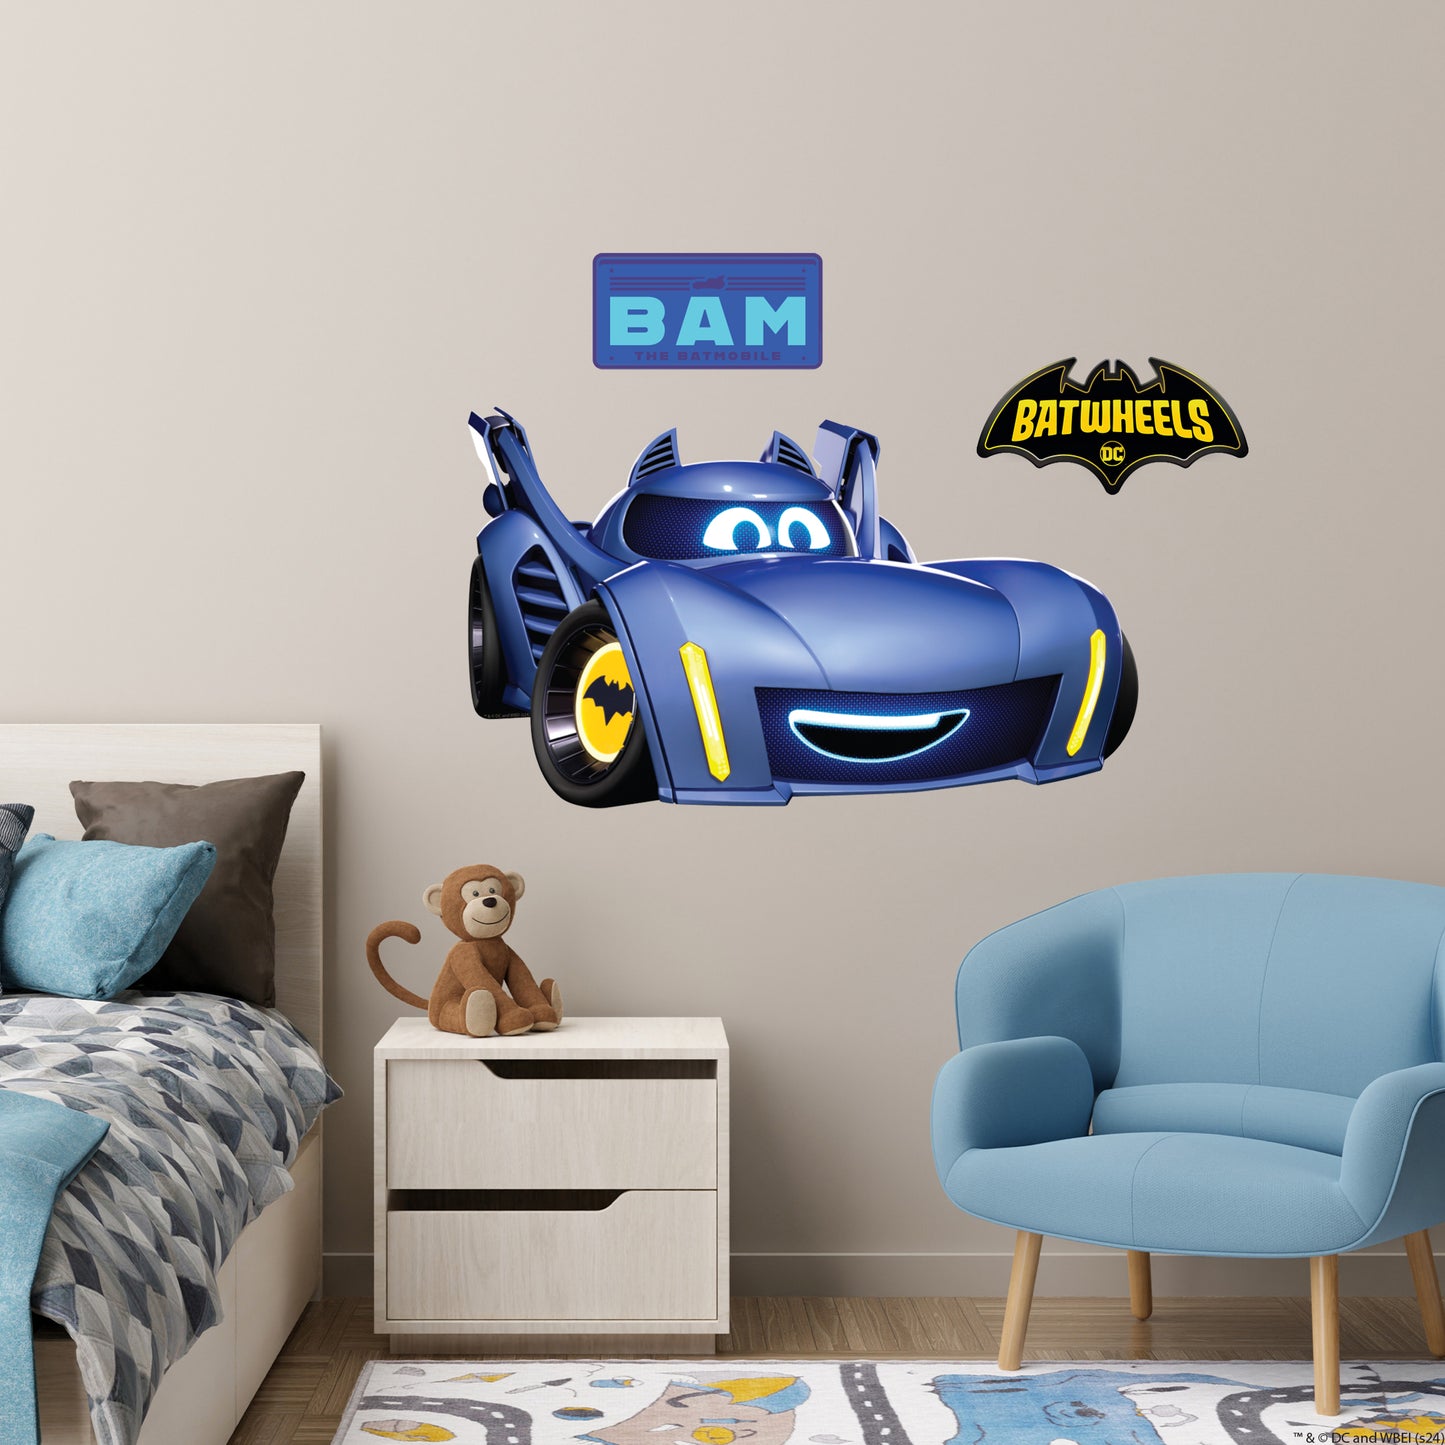 Batwheels™ Wall Sticker - Bam Decal DC Superhero Art